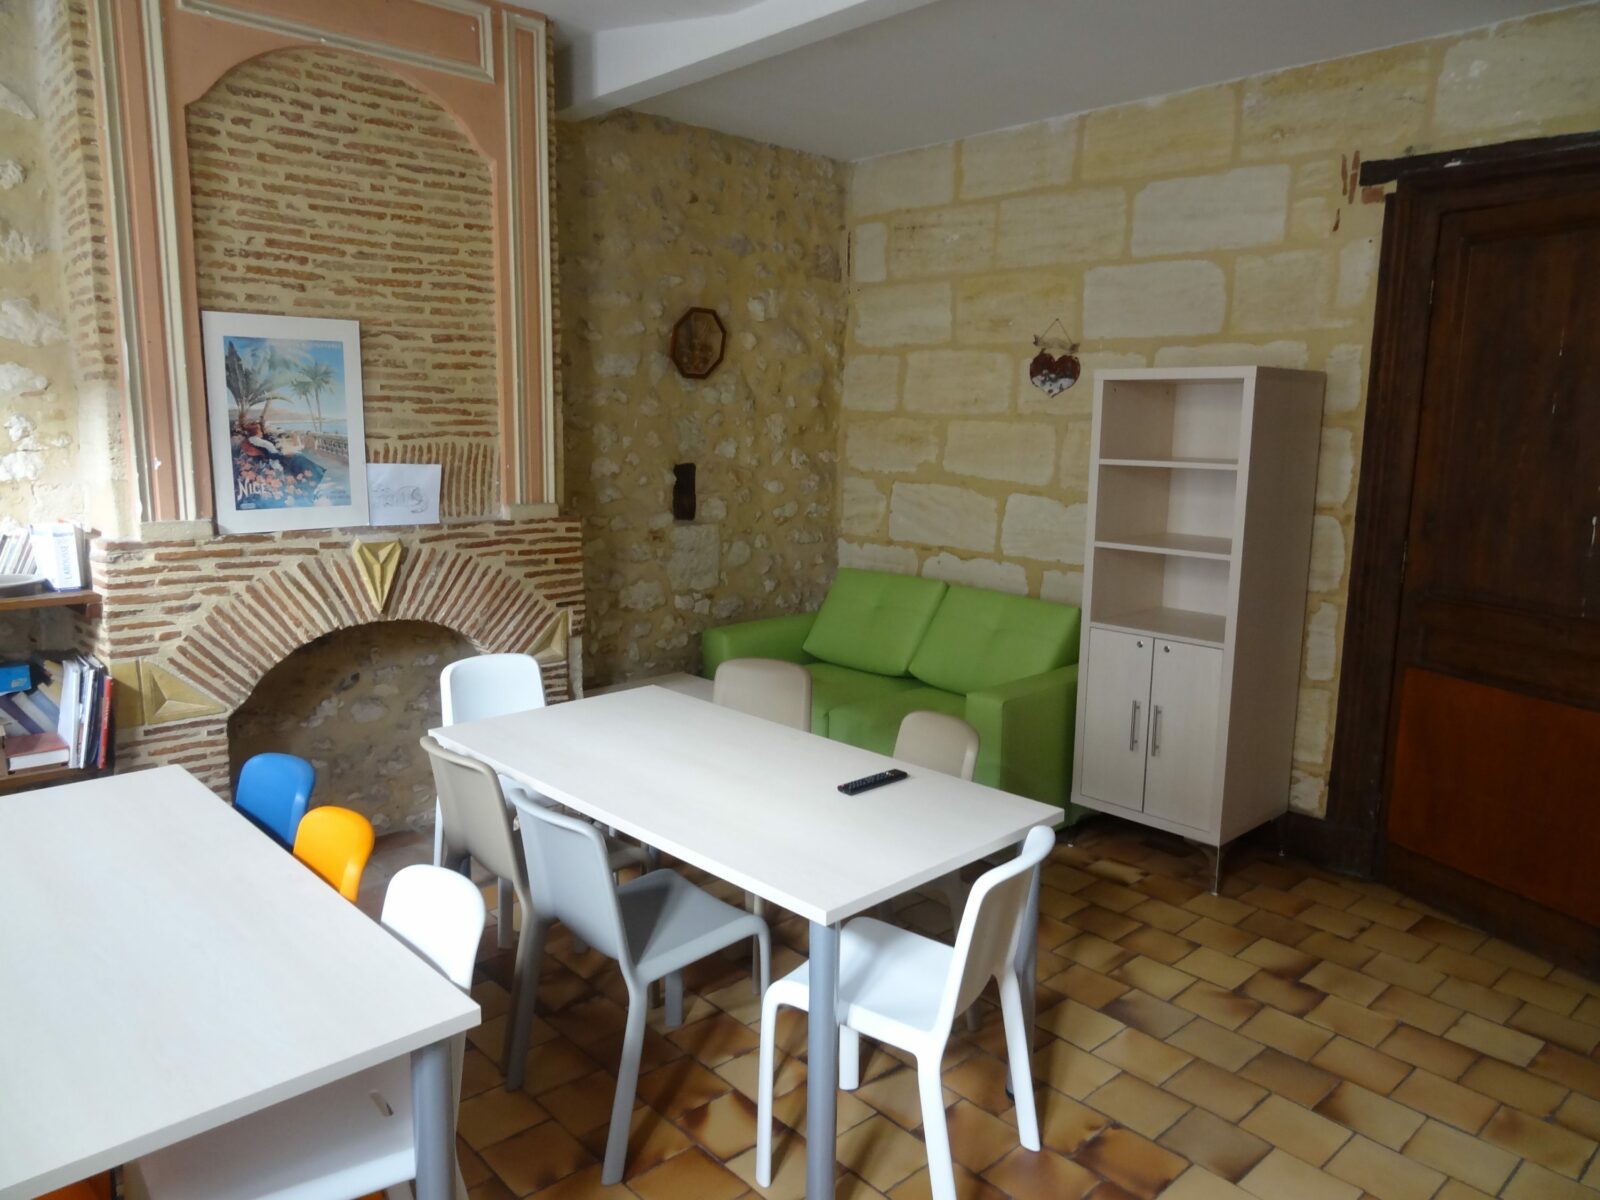 Maison d’enfants à caractère social en Gironde